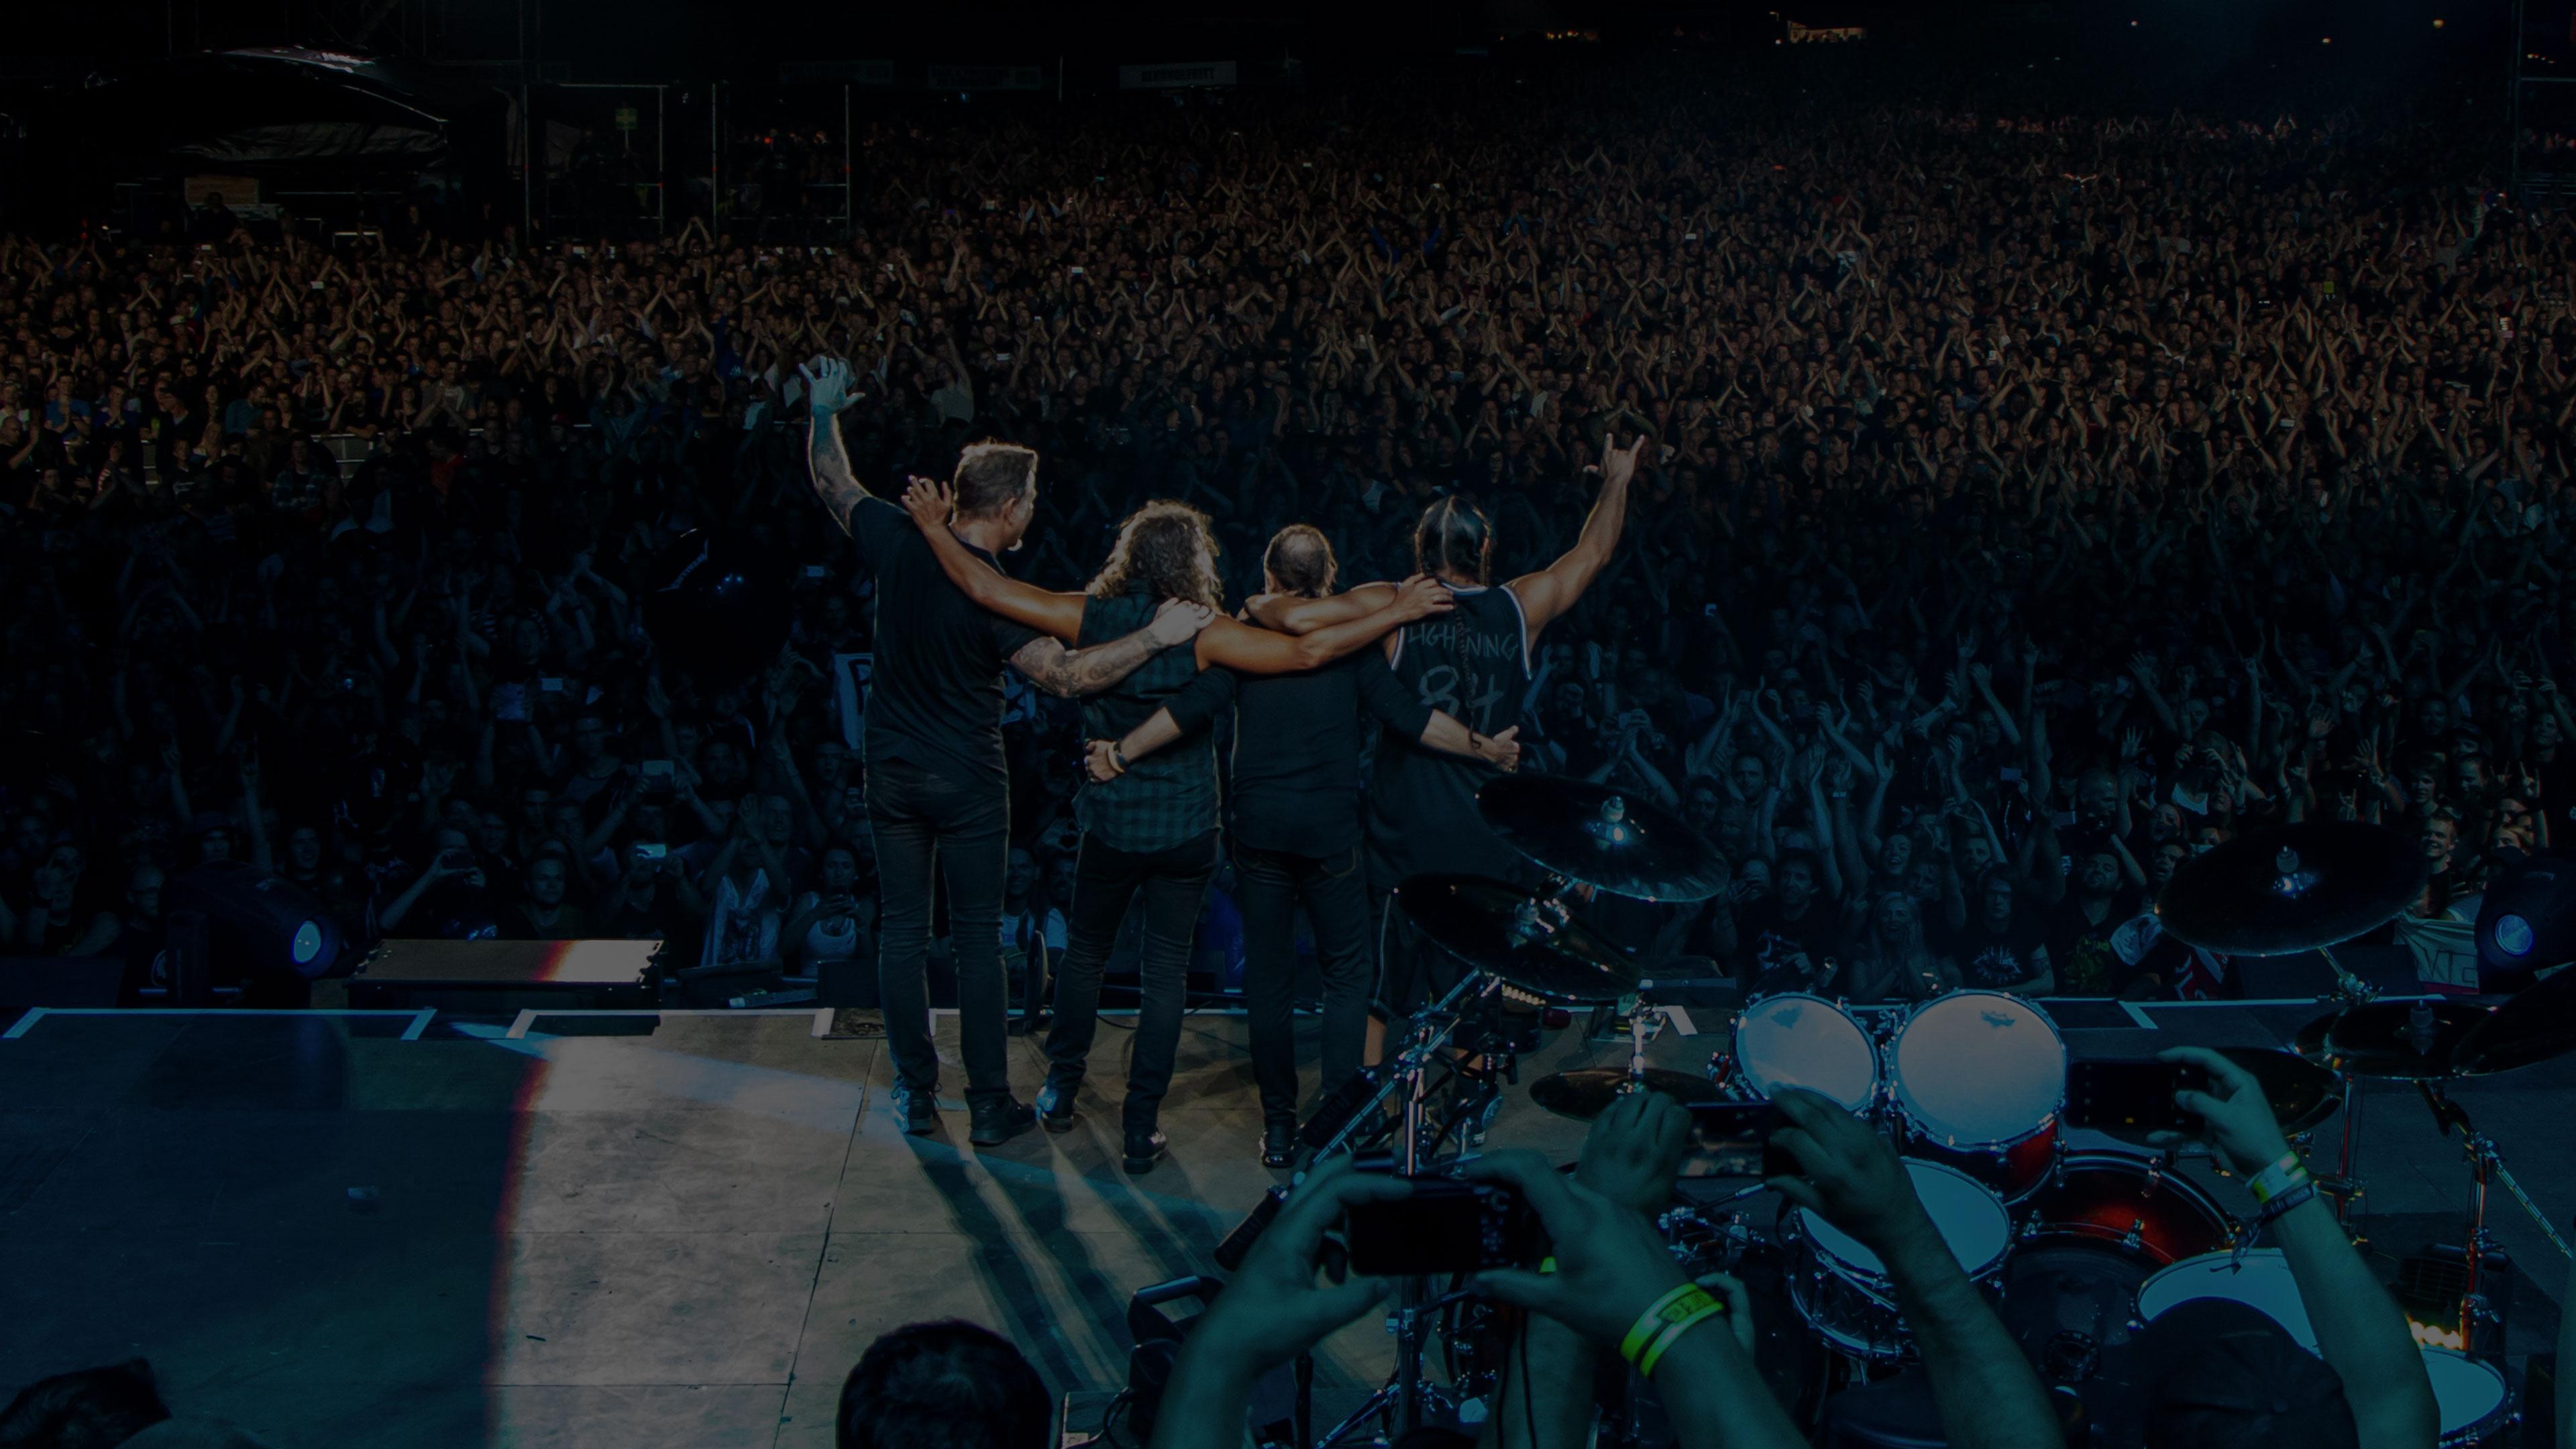 Metallica at Koengen in Bergen, Norway on August 20, 2015